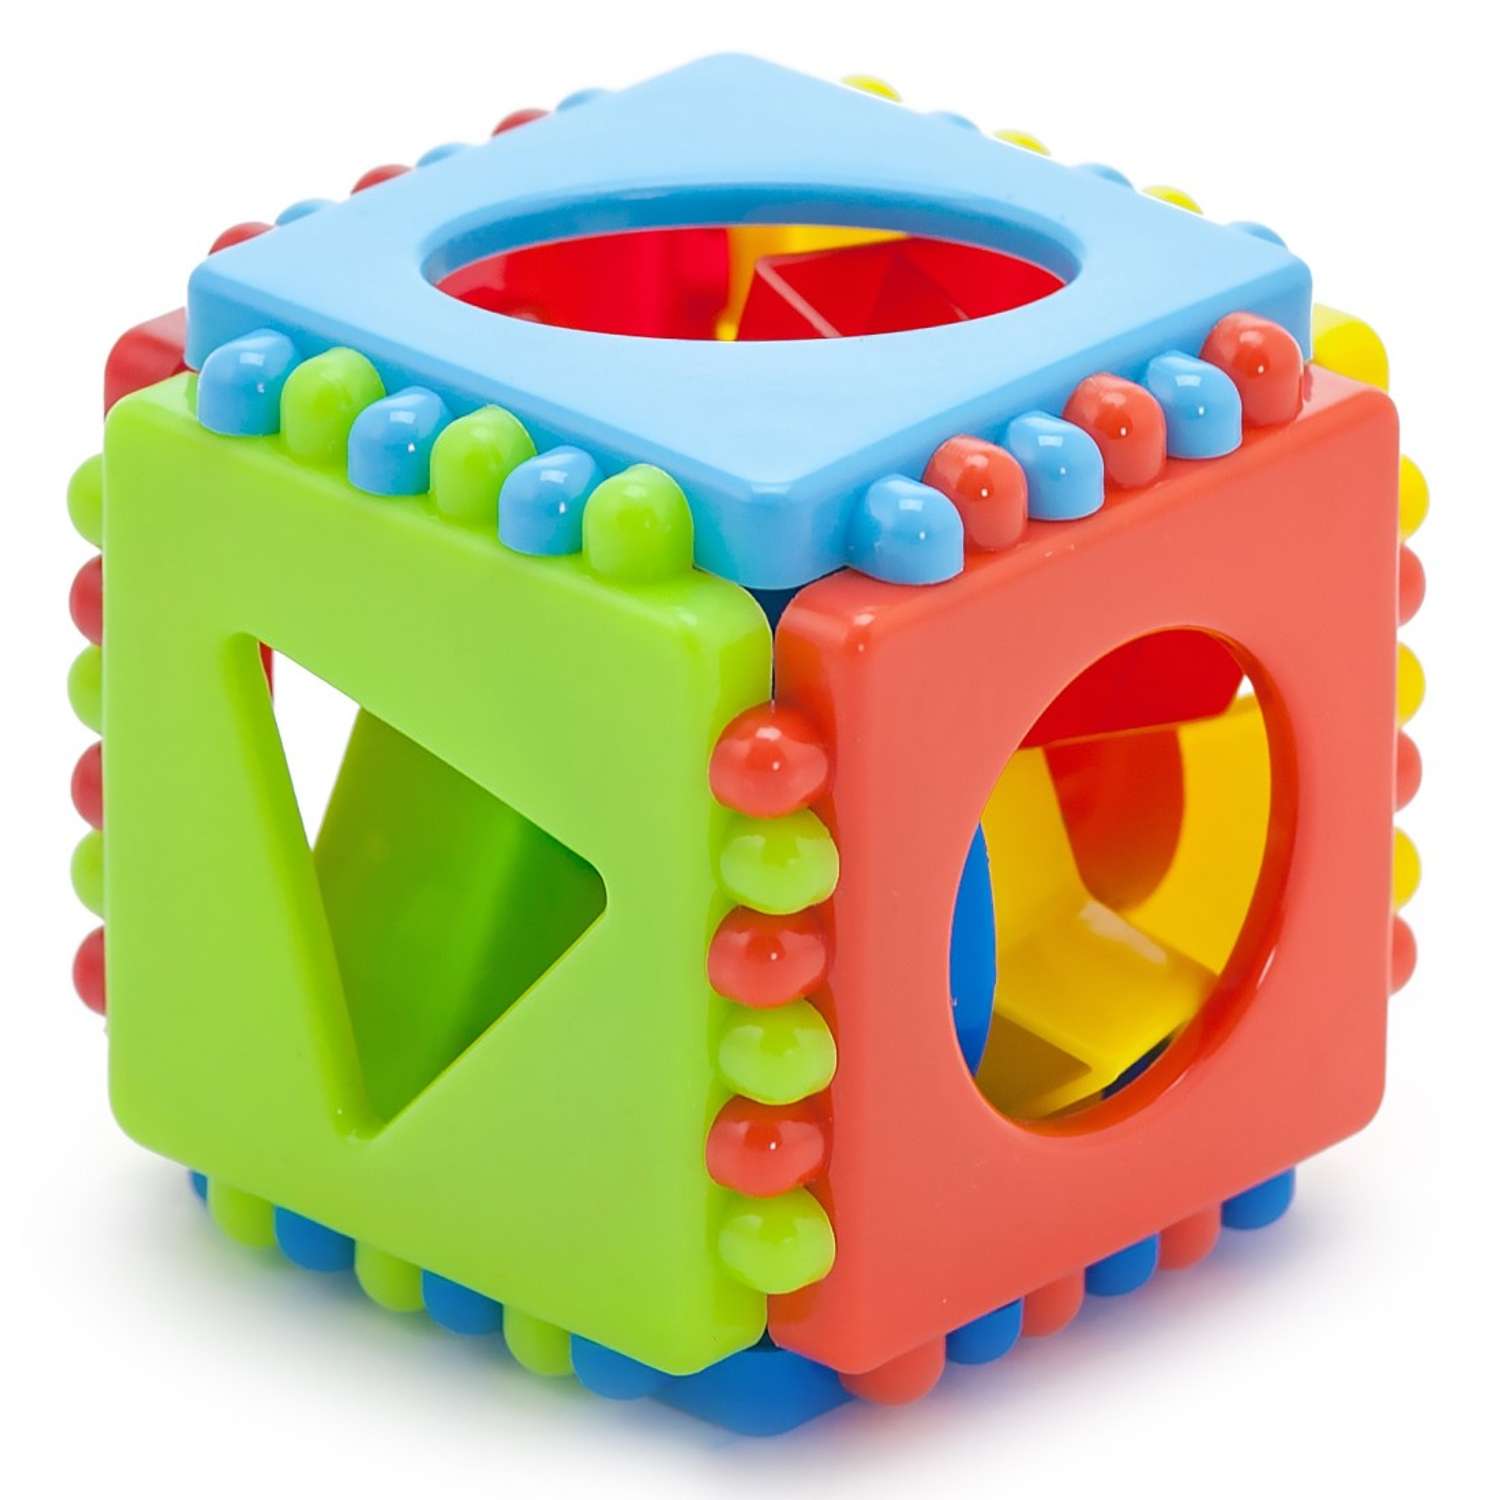 Развивающие игрушки БИПЛАНТ для малышей конструктор Кноп-Кнопыч 61 деталь + Сортер кубик малый + Команда КВА - фото 8